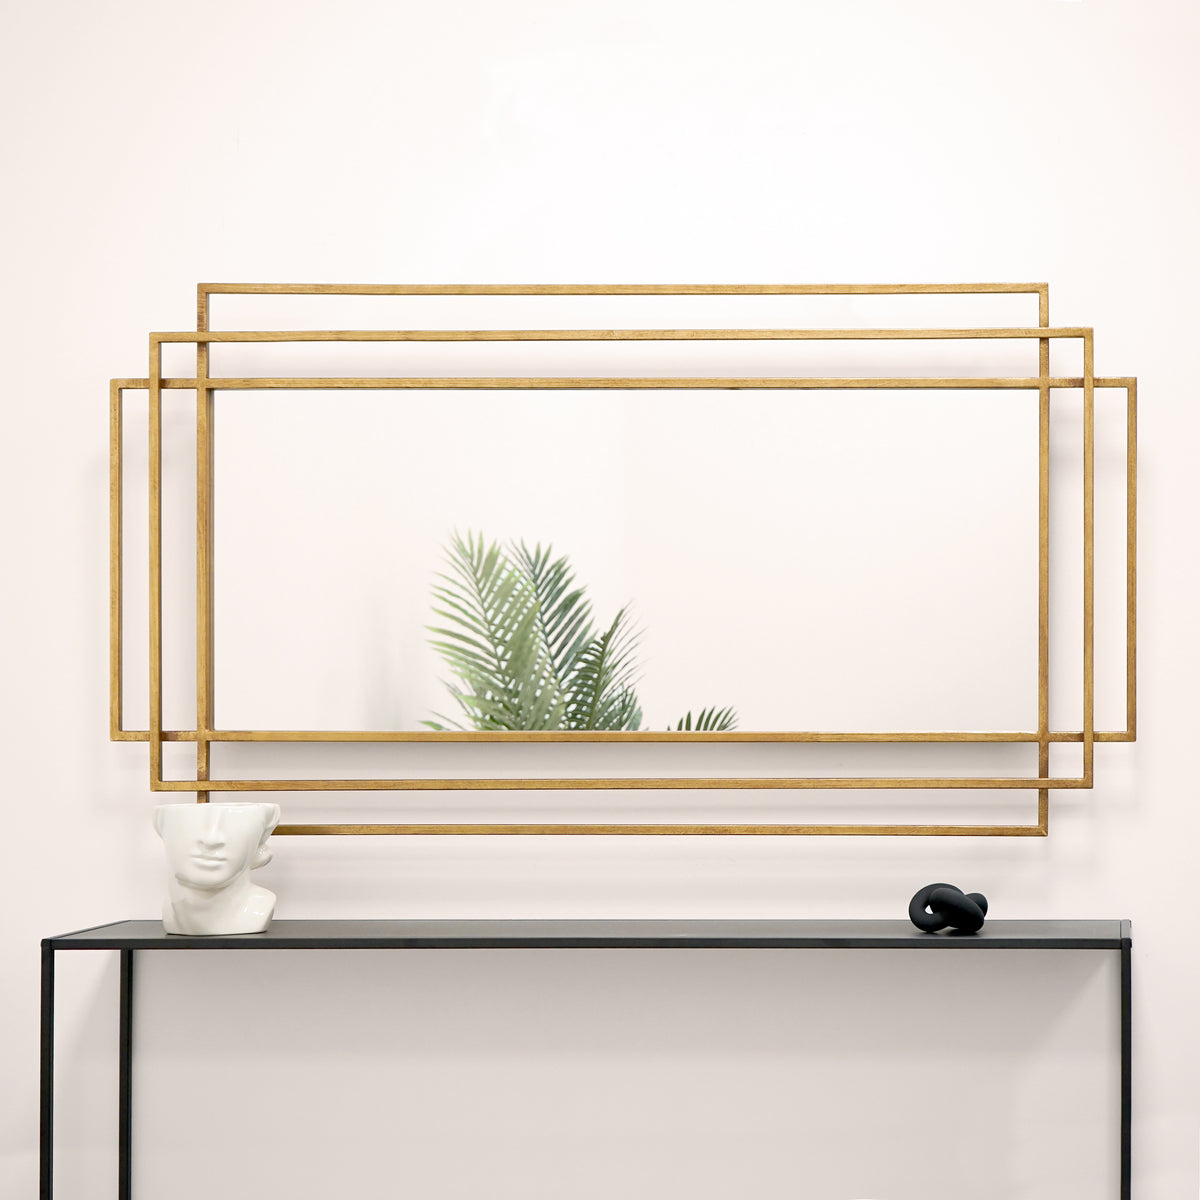 Large gold rectangular metal mirror displayed on wall